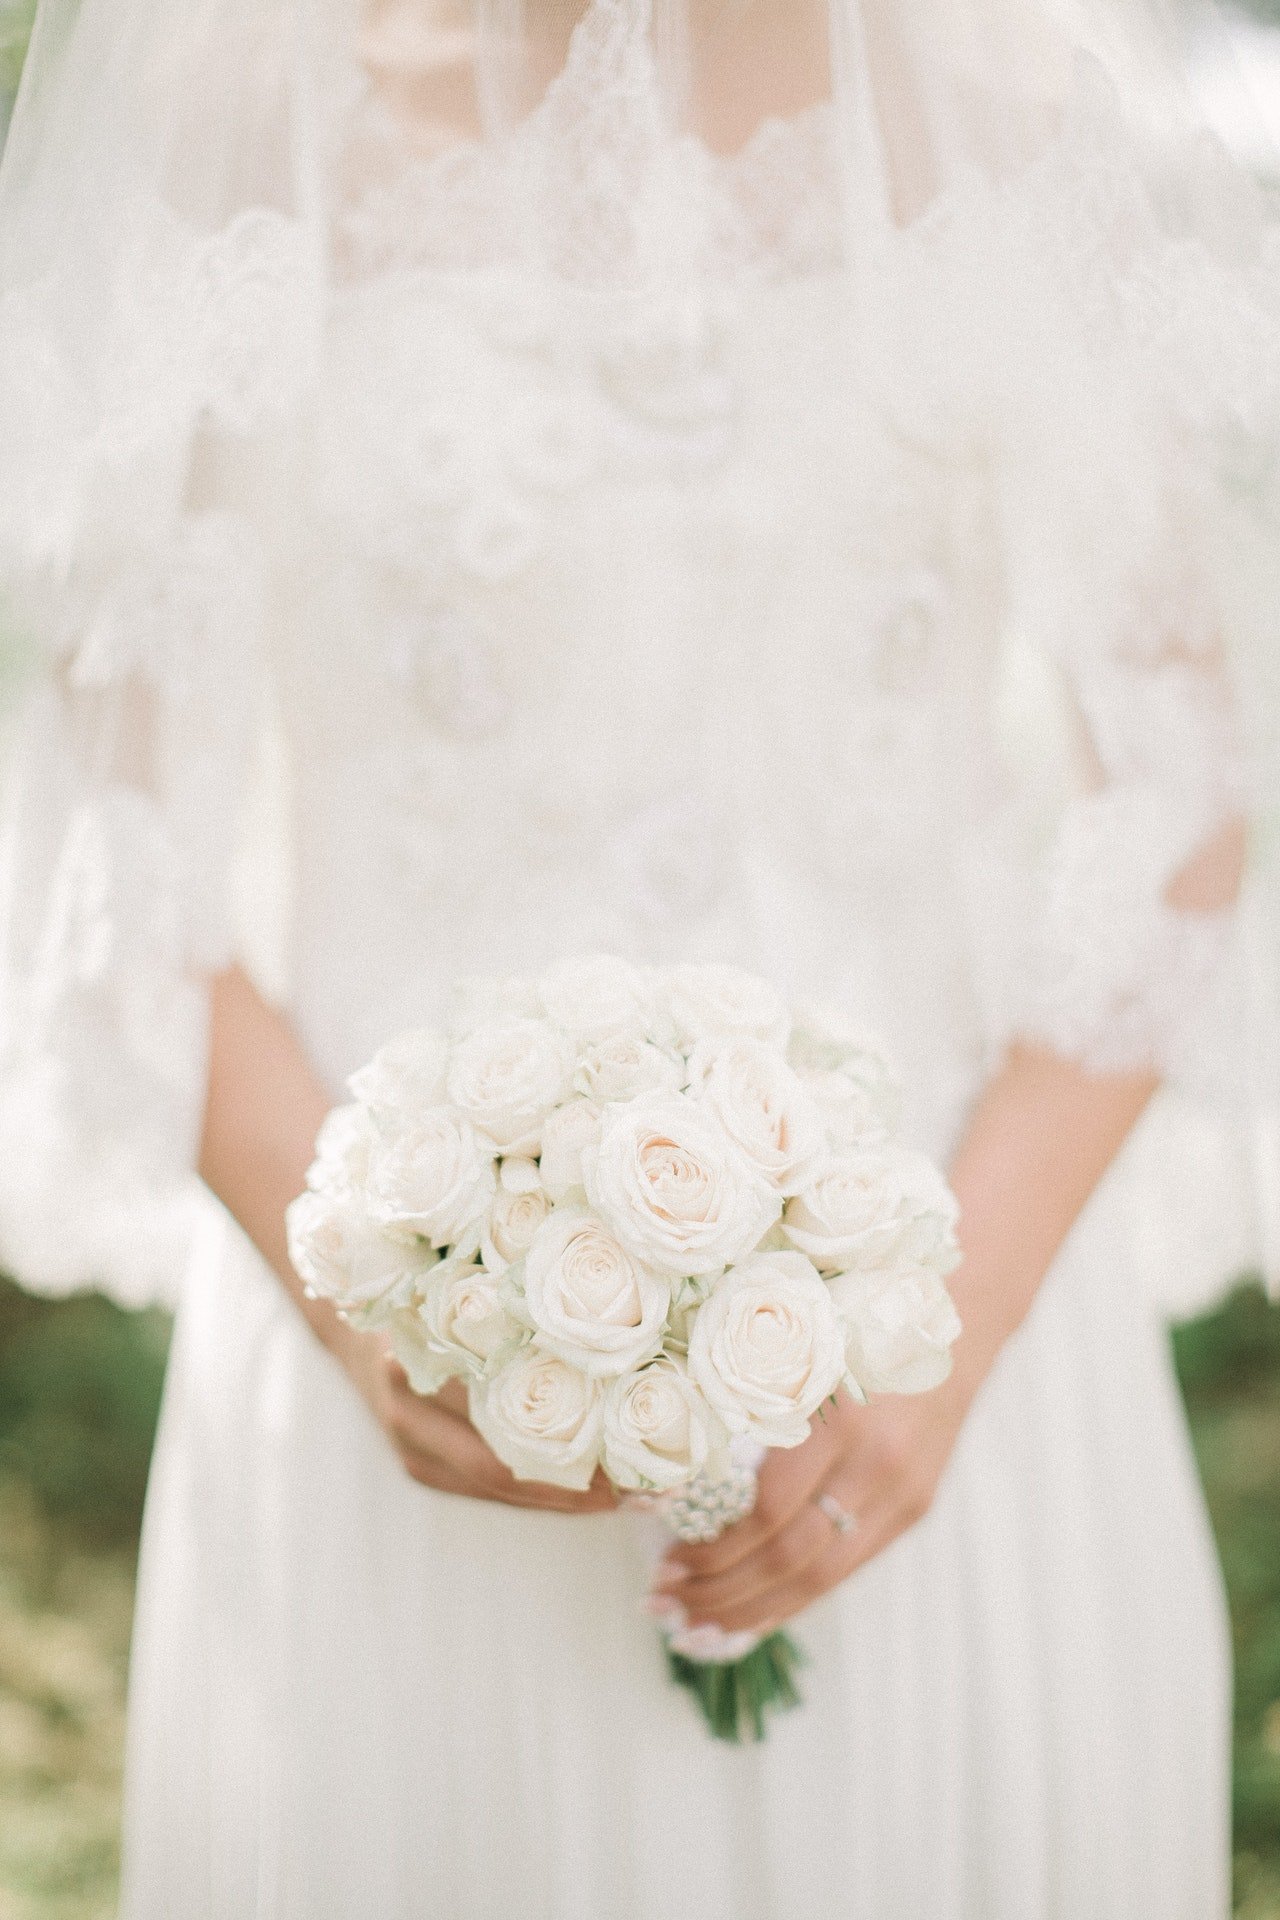 Vincent recognized the bride's dress. | Source: Pexels